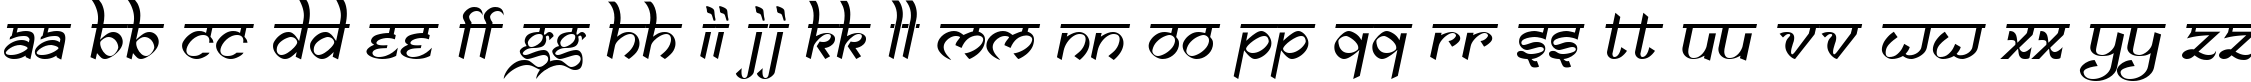 Пример написания английского алфавита шрифтом Samarkan Oblique